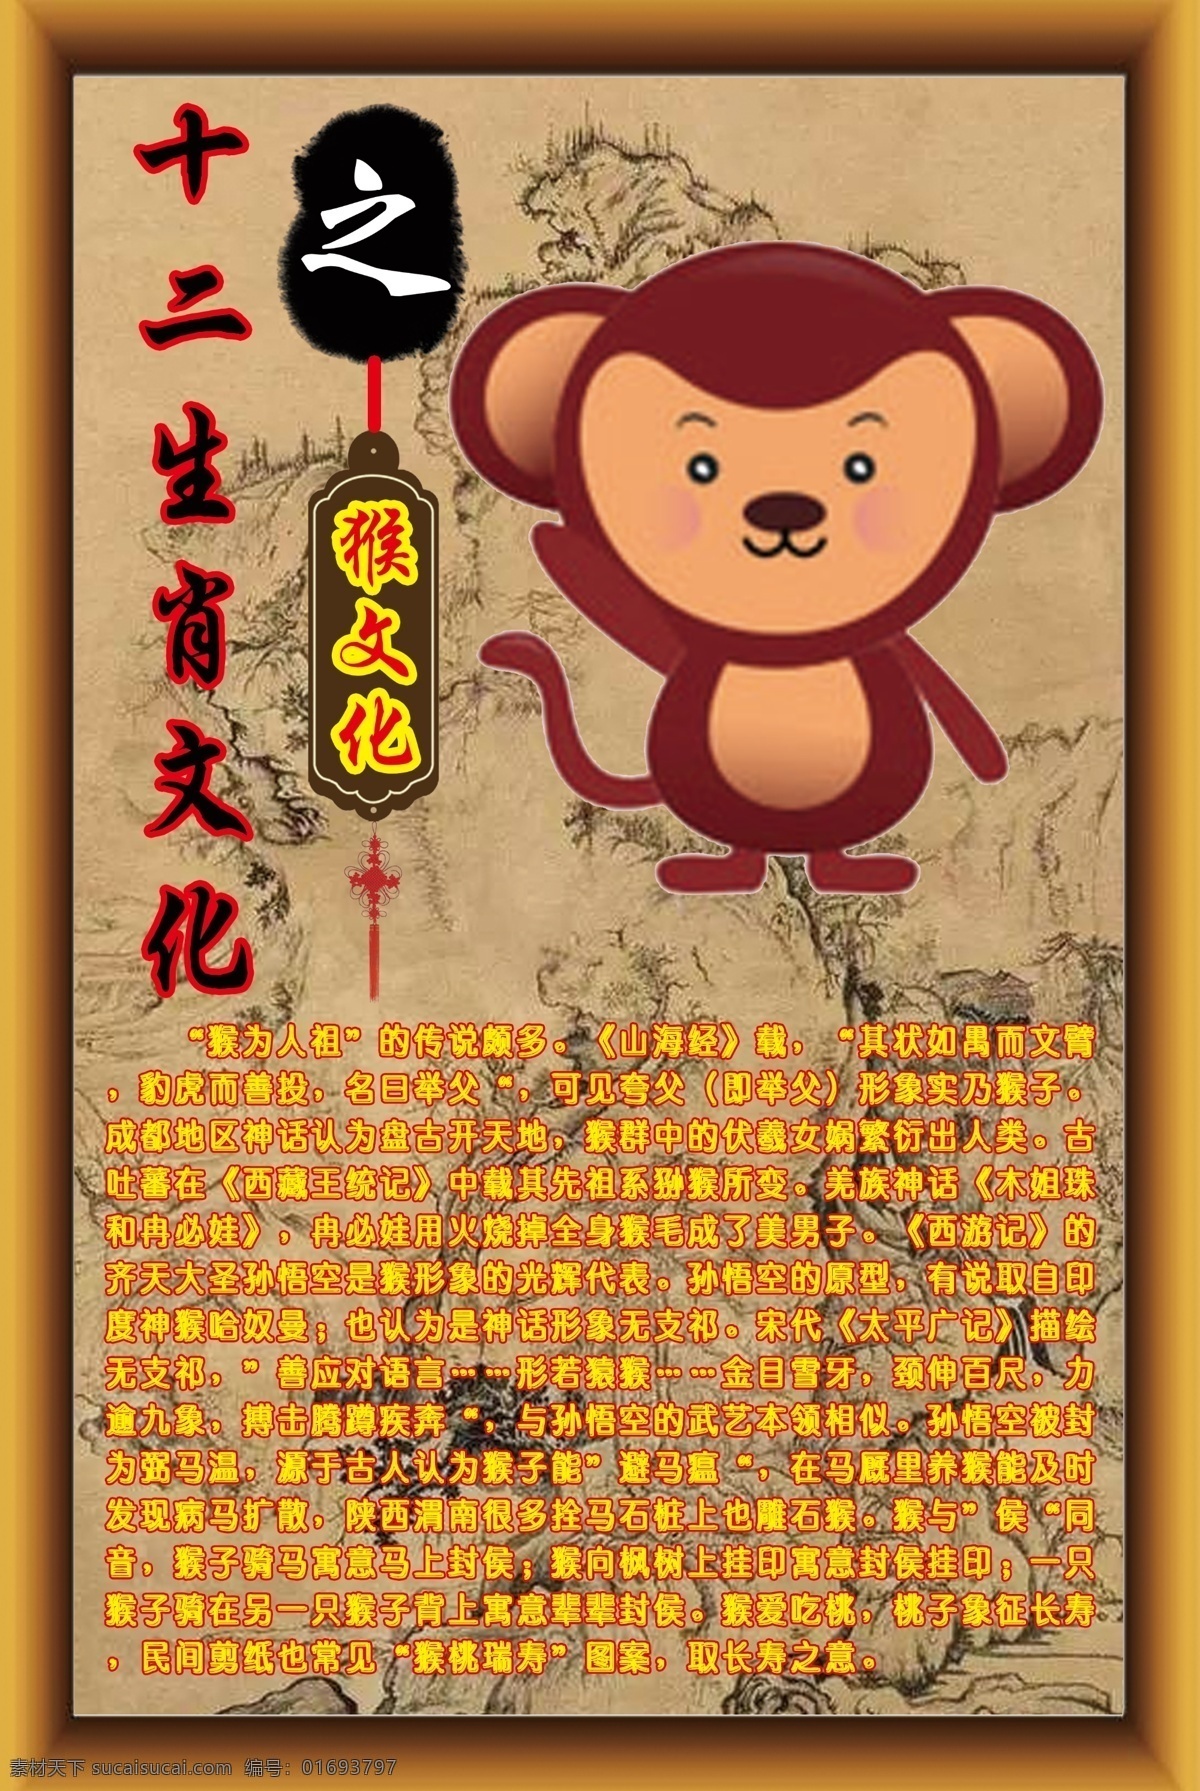 十二生肖 文化 猴 十二 生肖 猴文化 十二生肖文化 展板模板